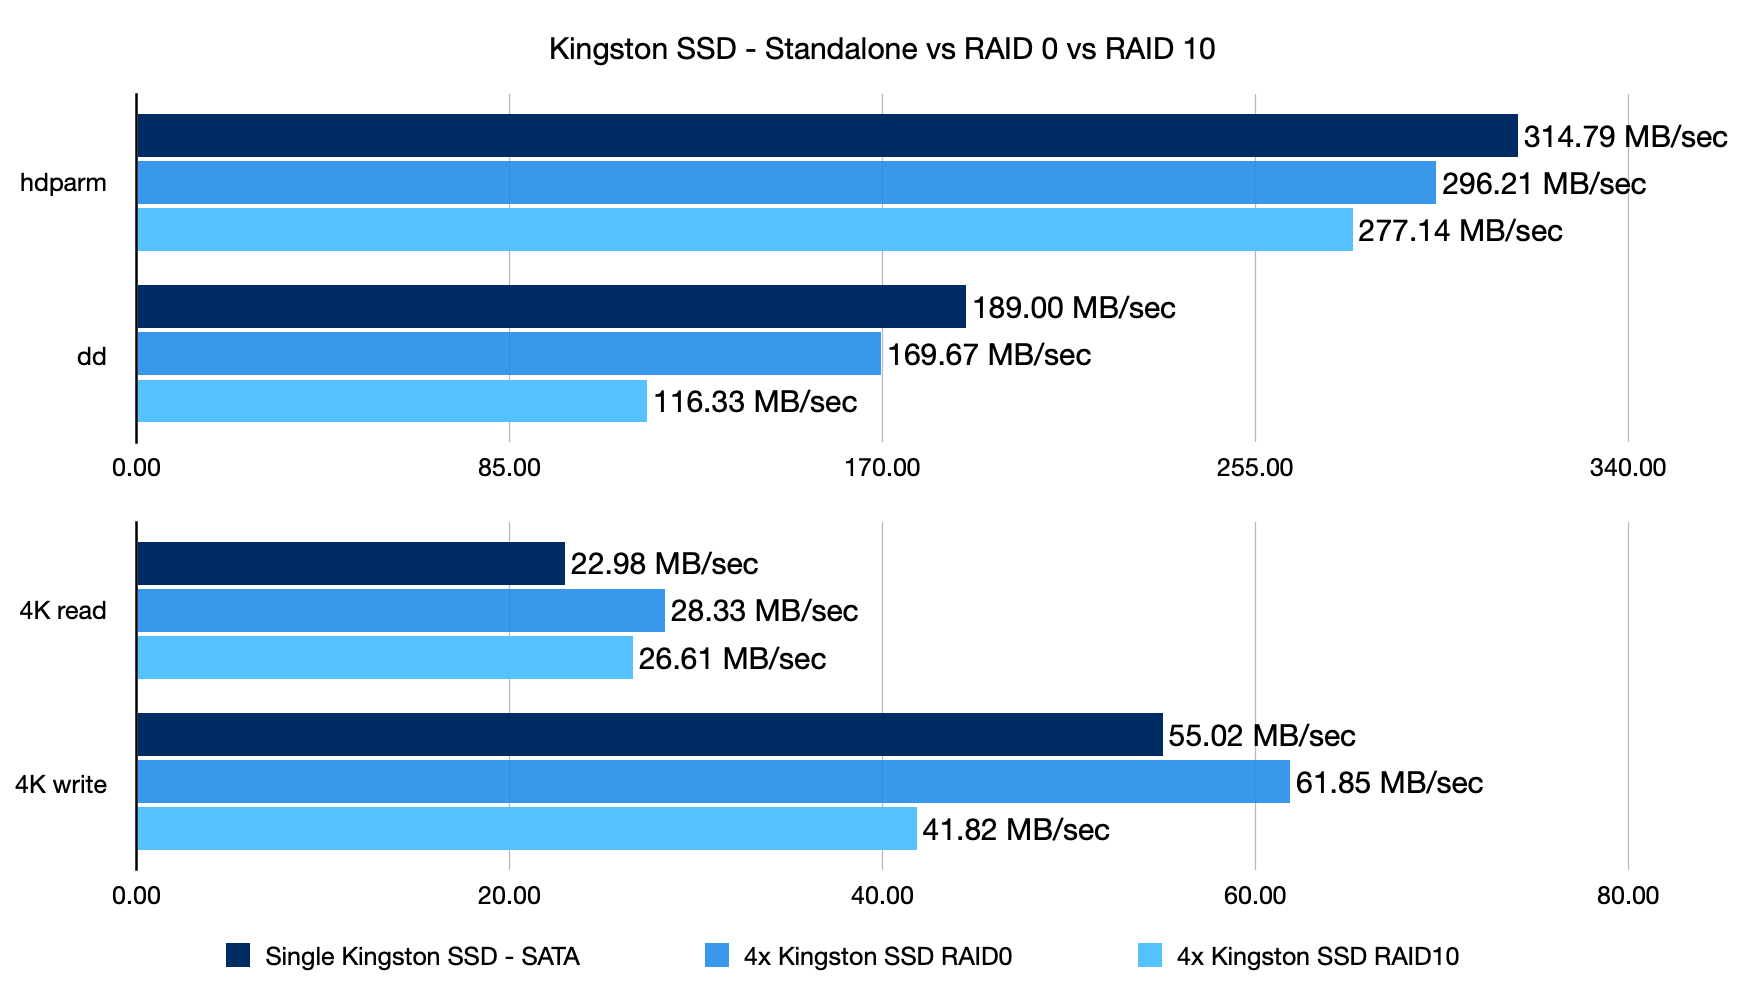 Kingston SSD standalone vs RAID 0 vs RAID 10